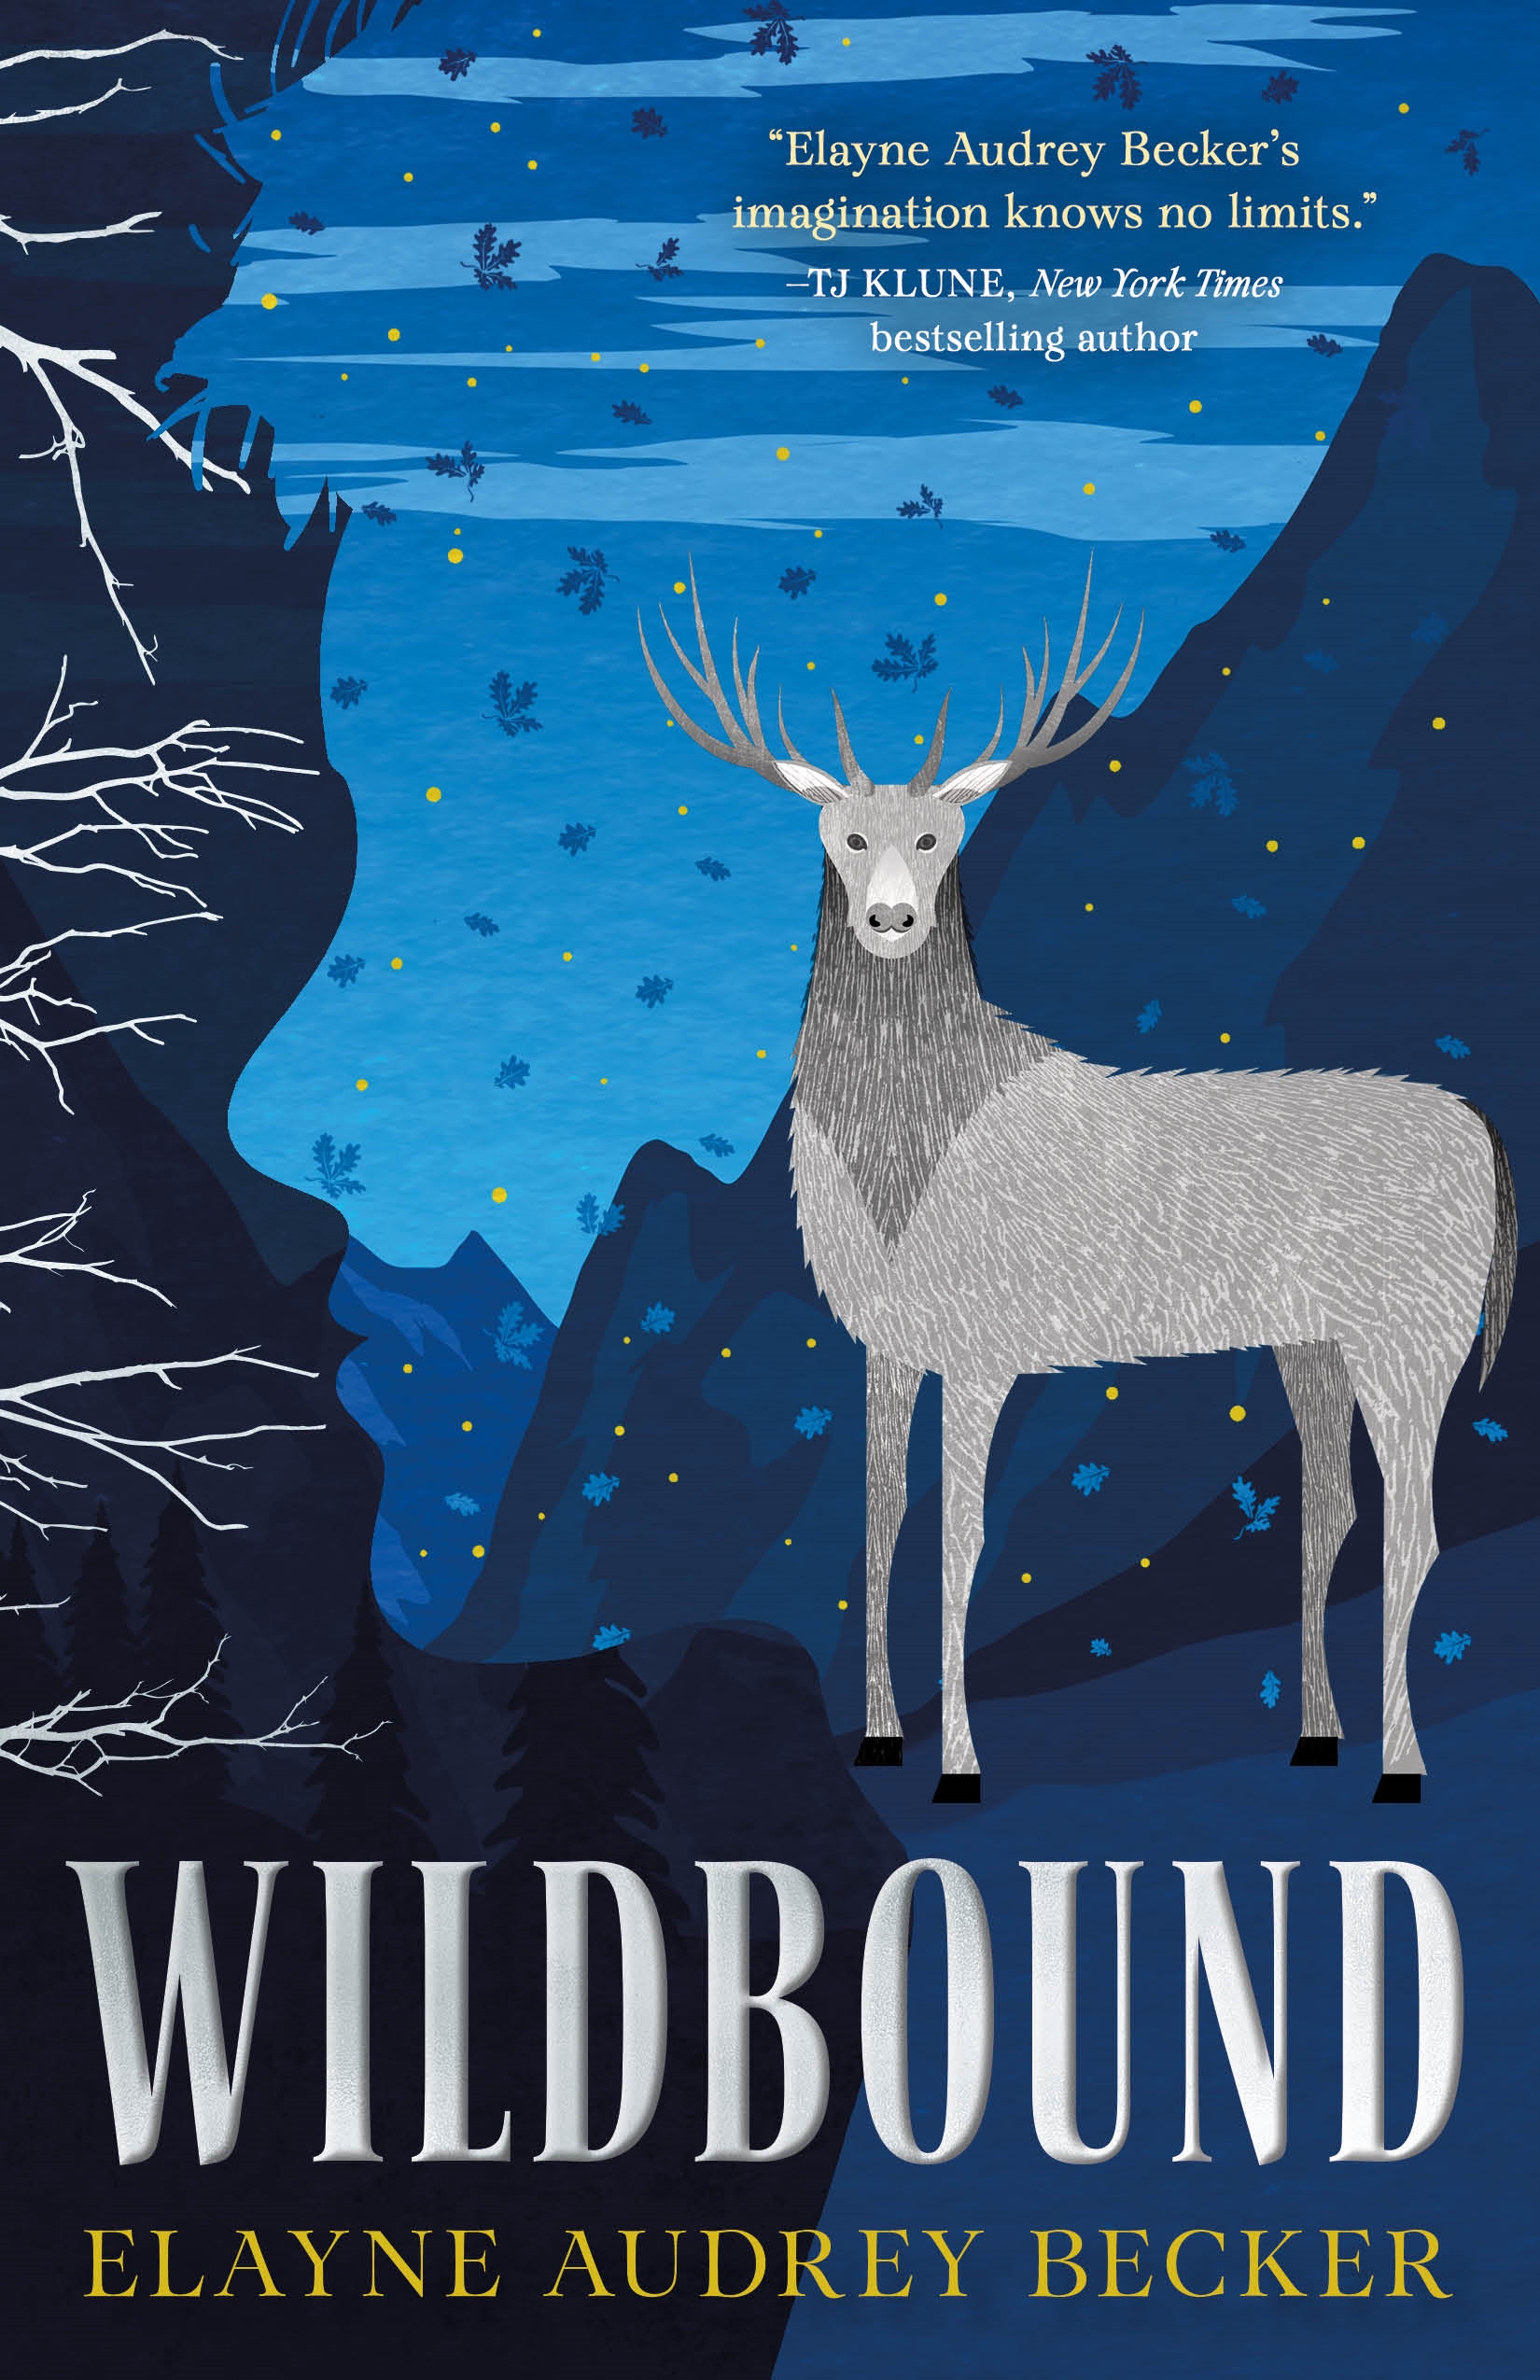 Wildbound by Elayne Audrey Becker